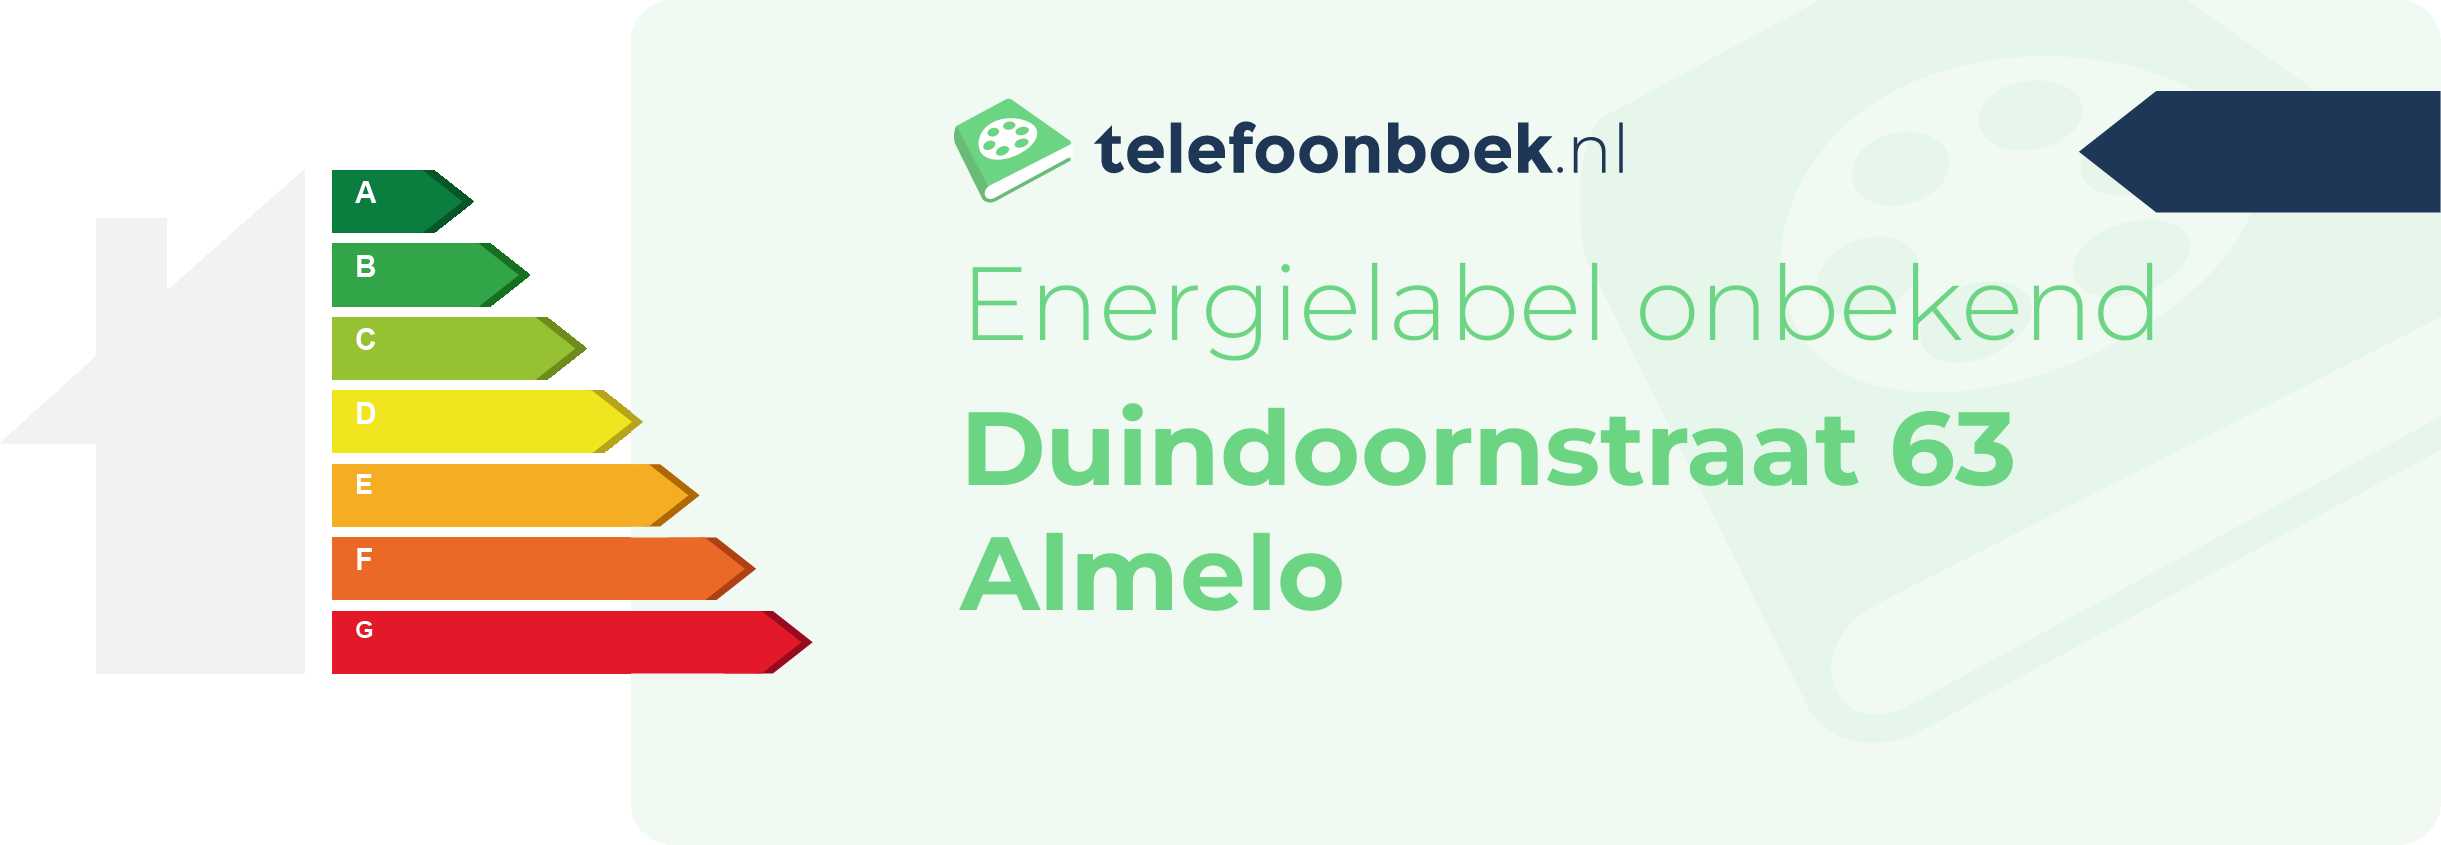 Energielabel Duindoornstraat 63 Almelo